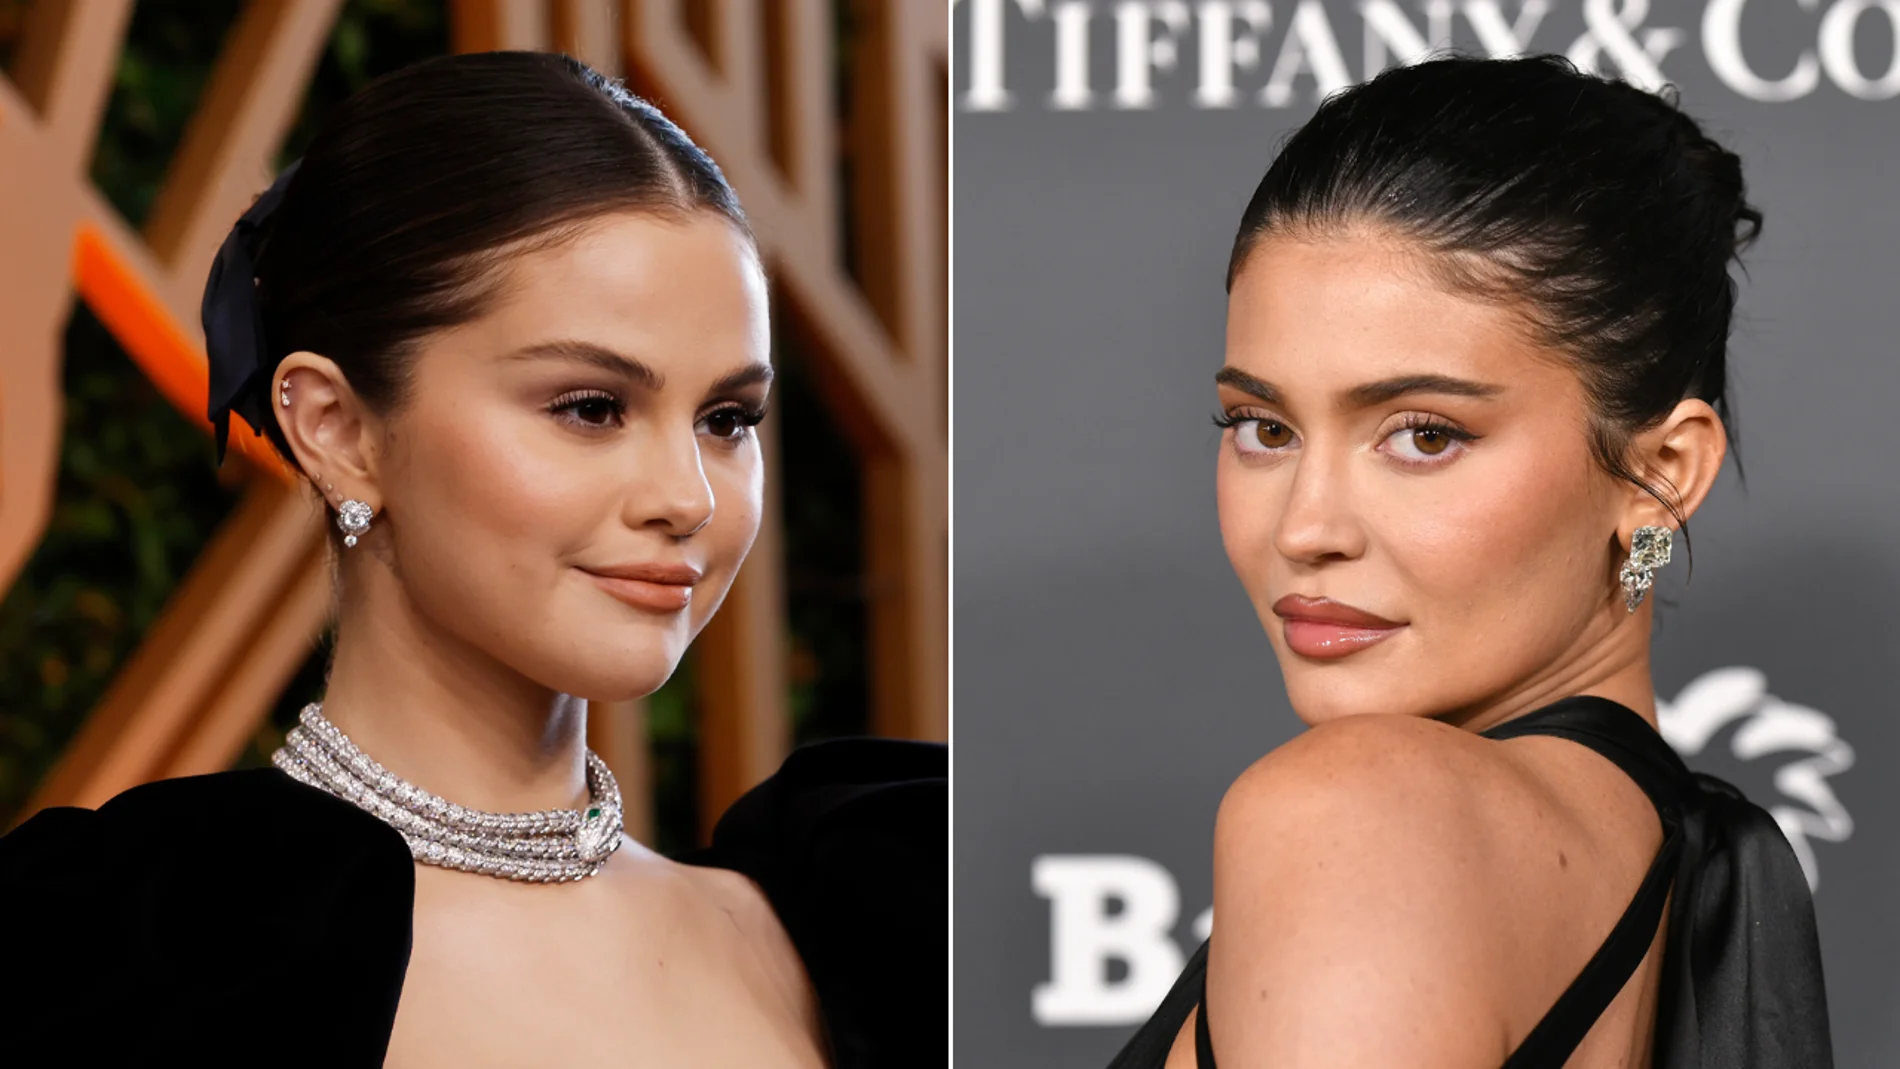 ¿Qué está pasando entre Selena Gomez y Kylie Jenner?